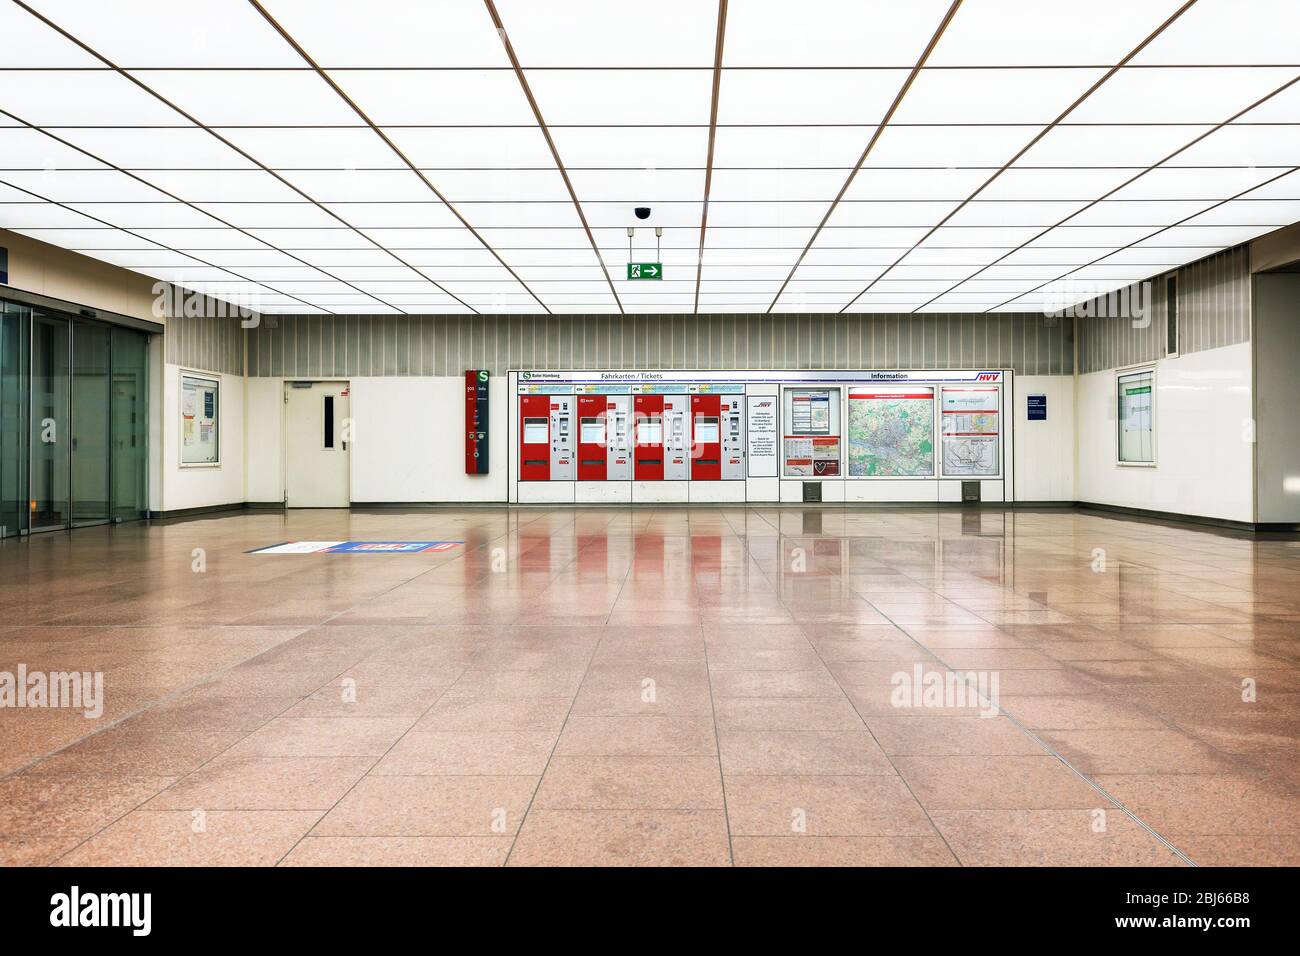 Hambourg, Allemagne - Mars 29 2020: Les distributeurs de billets pour S1S-Bahn sur l'aéroport de Hambourg, sans personne autour Banque D'Images